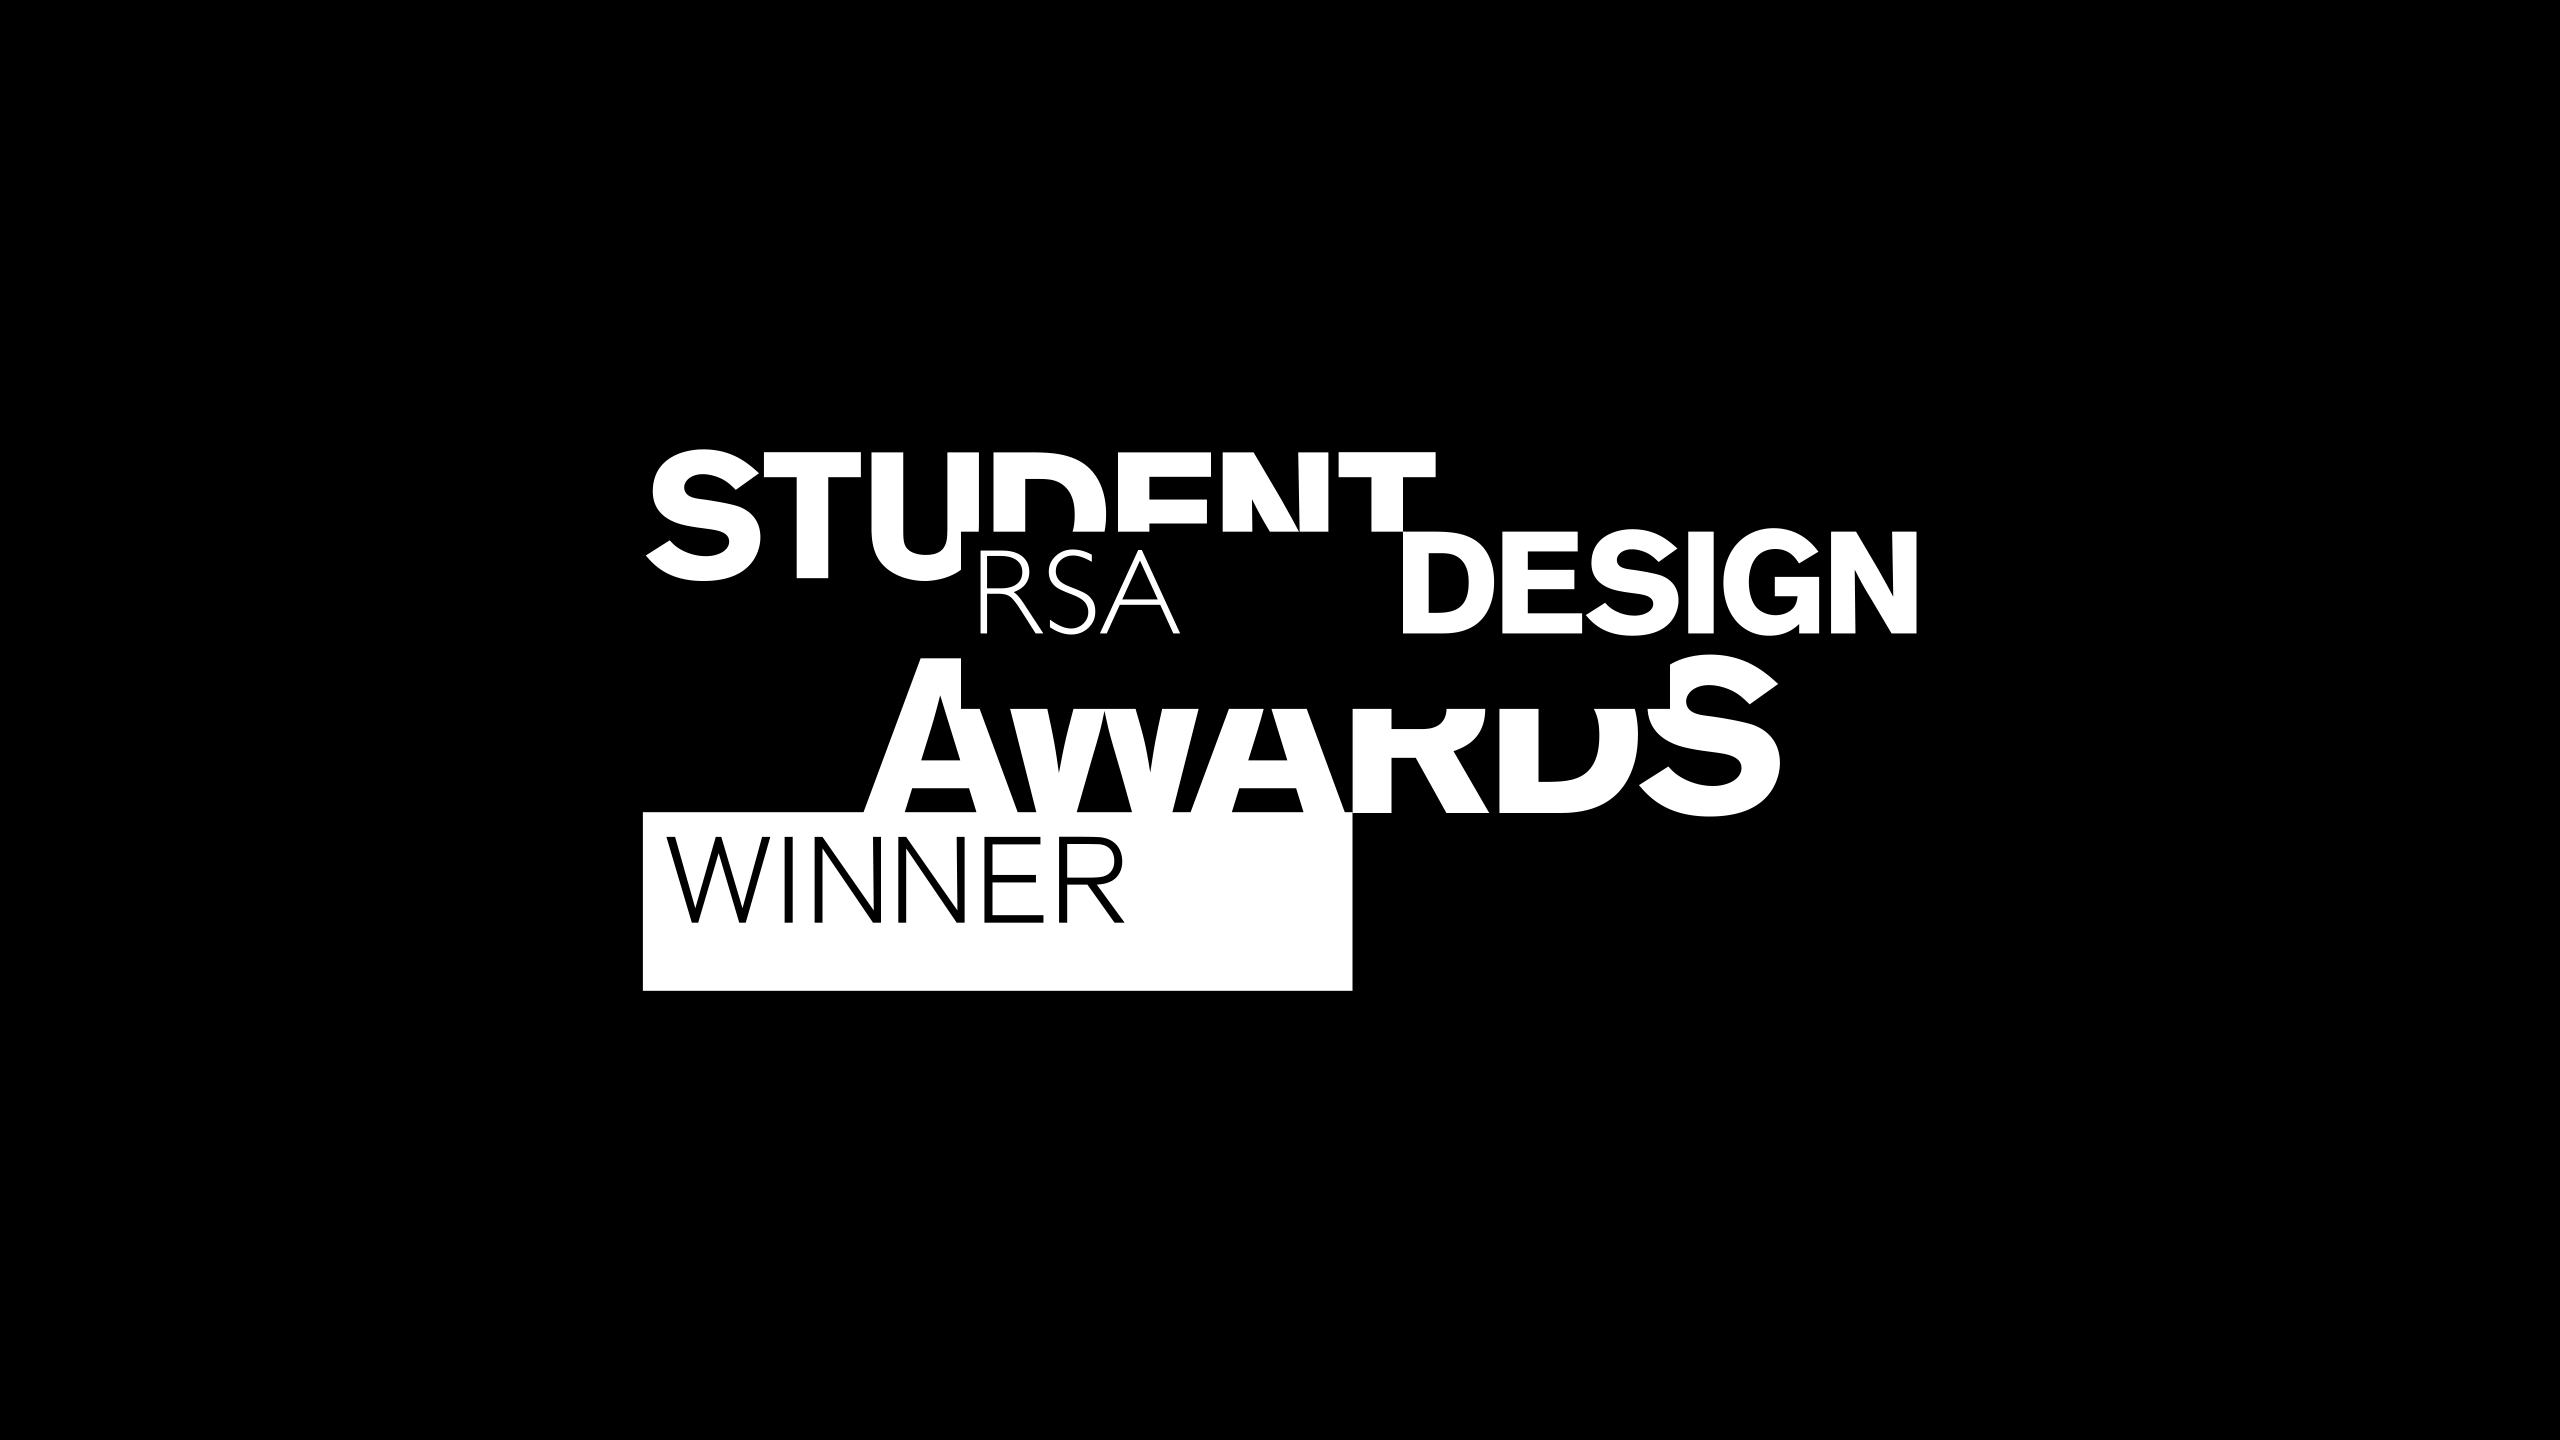 rsa-student-design-awards-winner-logo